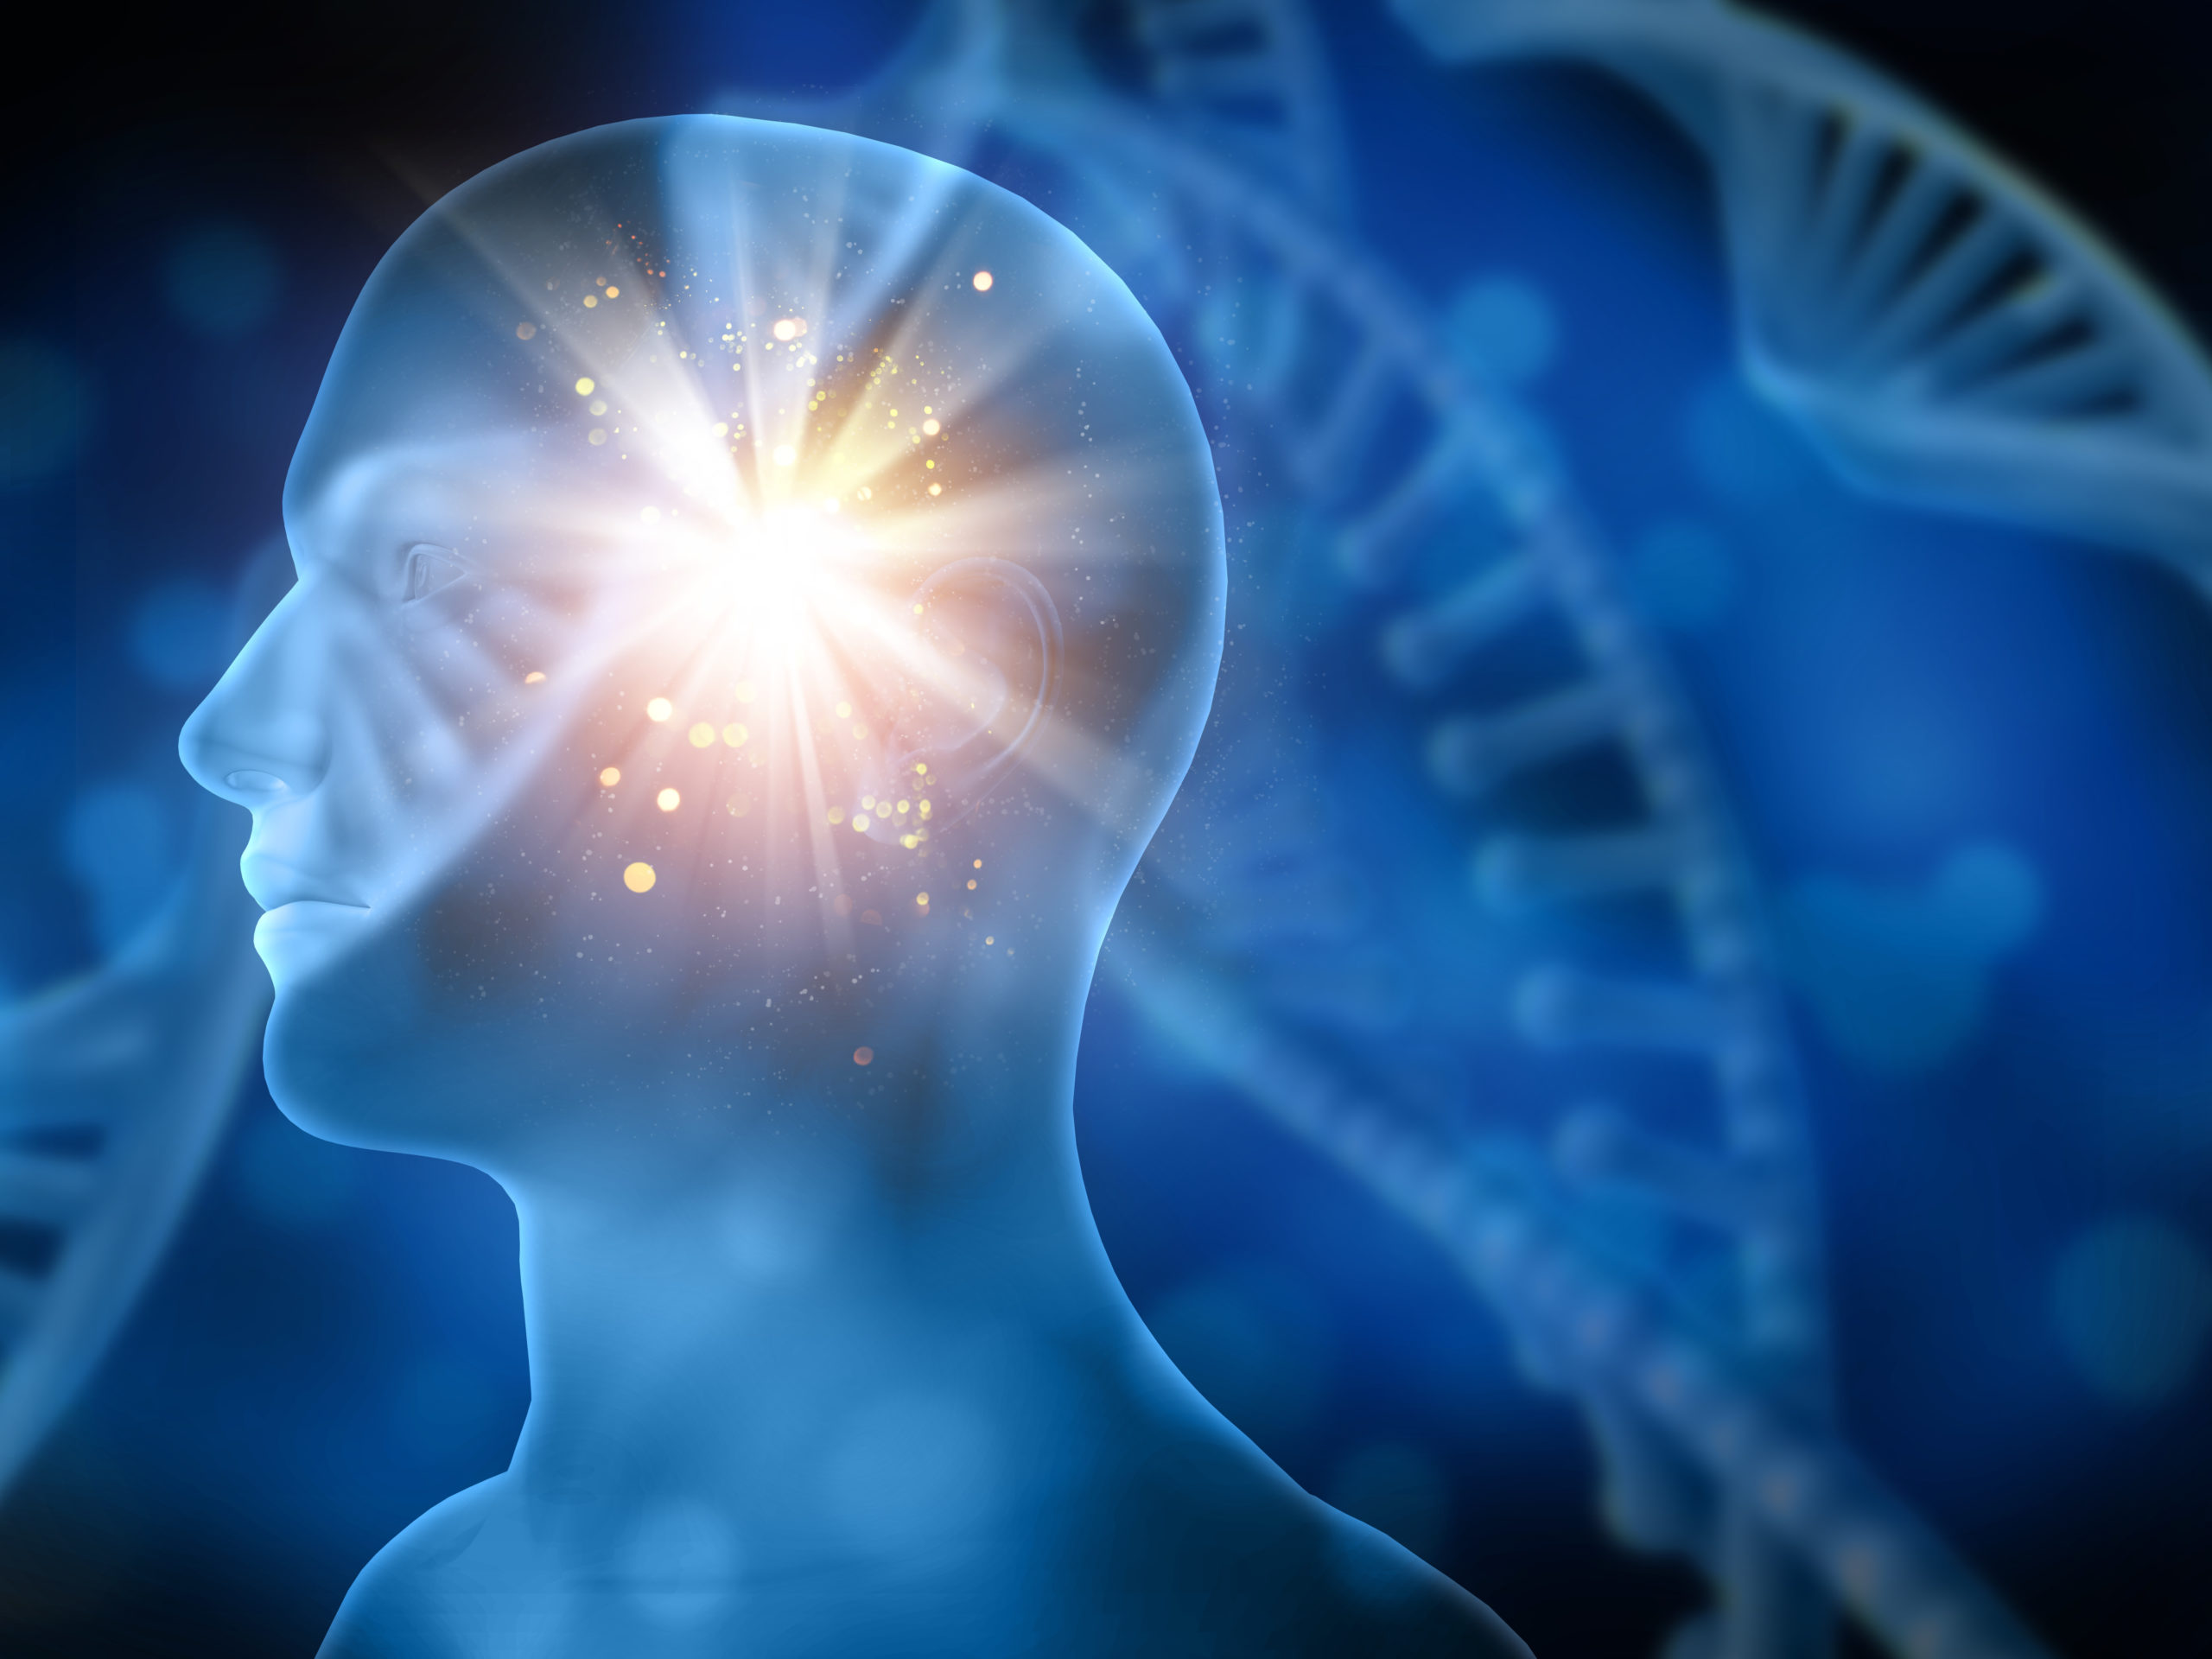 Επιστήμονες ανακάλυψαν πώς μπορεί να αντιστραφεί η διαδικασία του εγκεφαλικού θανάτου – Εντόπισαν από πού ξεκινά το «κύμα θανάτου»